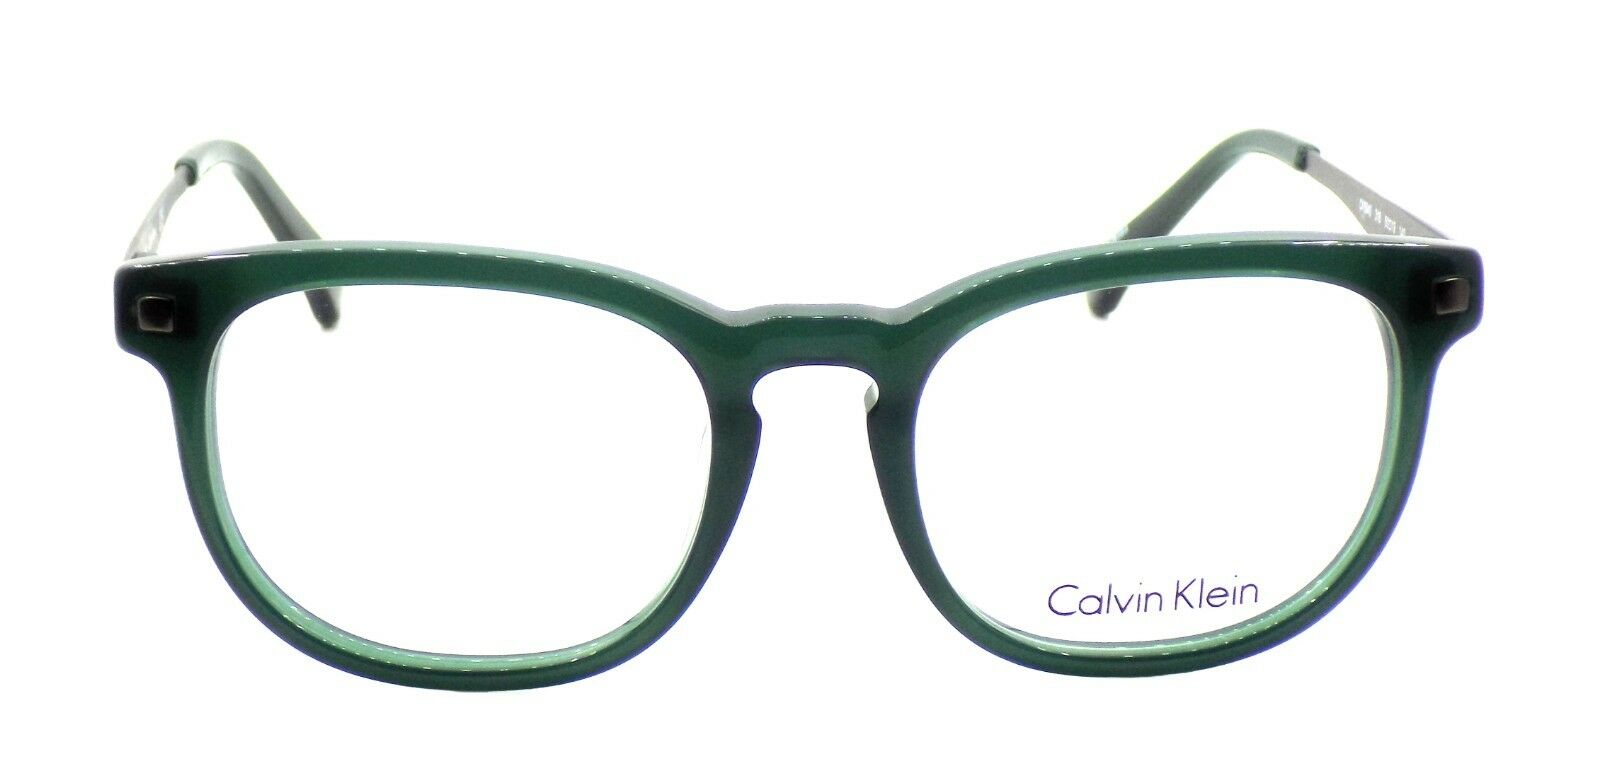 2-Calvin Klein CK5940 318 Unisex Eyeglasses Frames Olive 50-19-140 + CASE-750779100974-IKSpecs